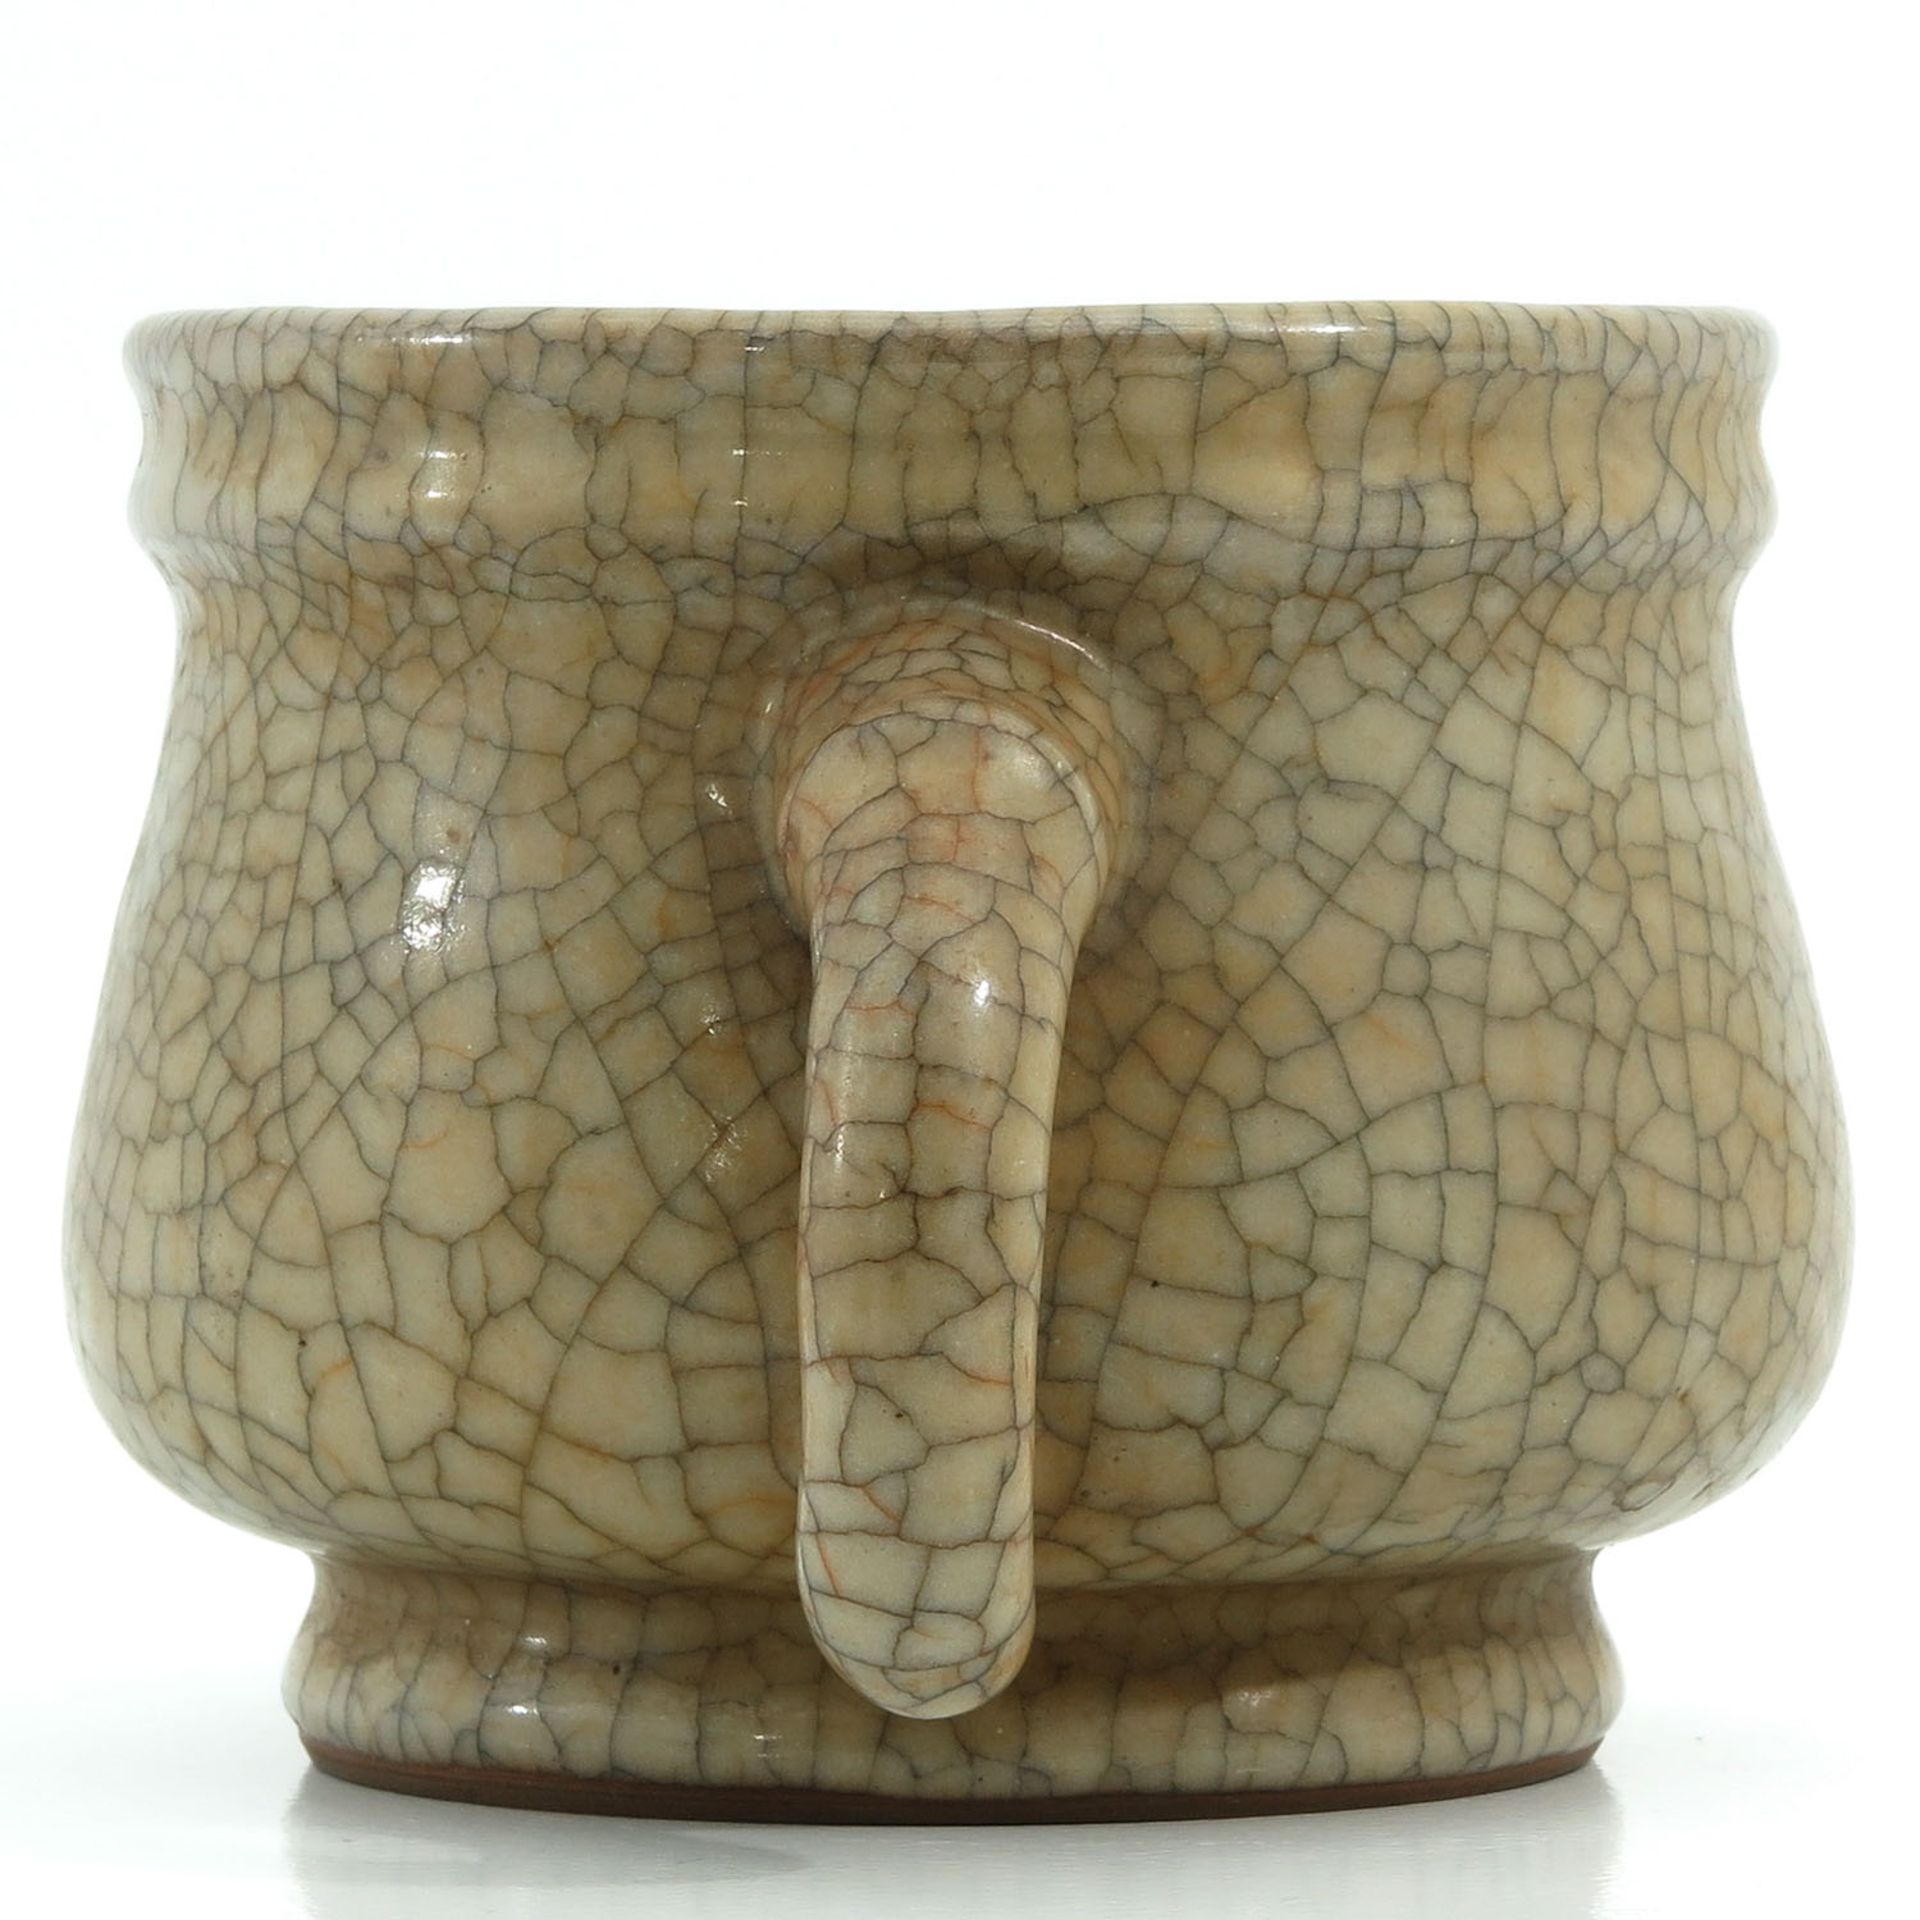 A Crackle Decor Vase with Handles - Bild 4 aus 9